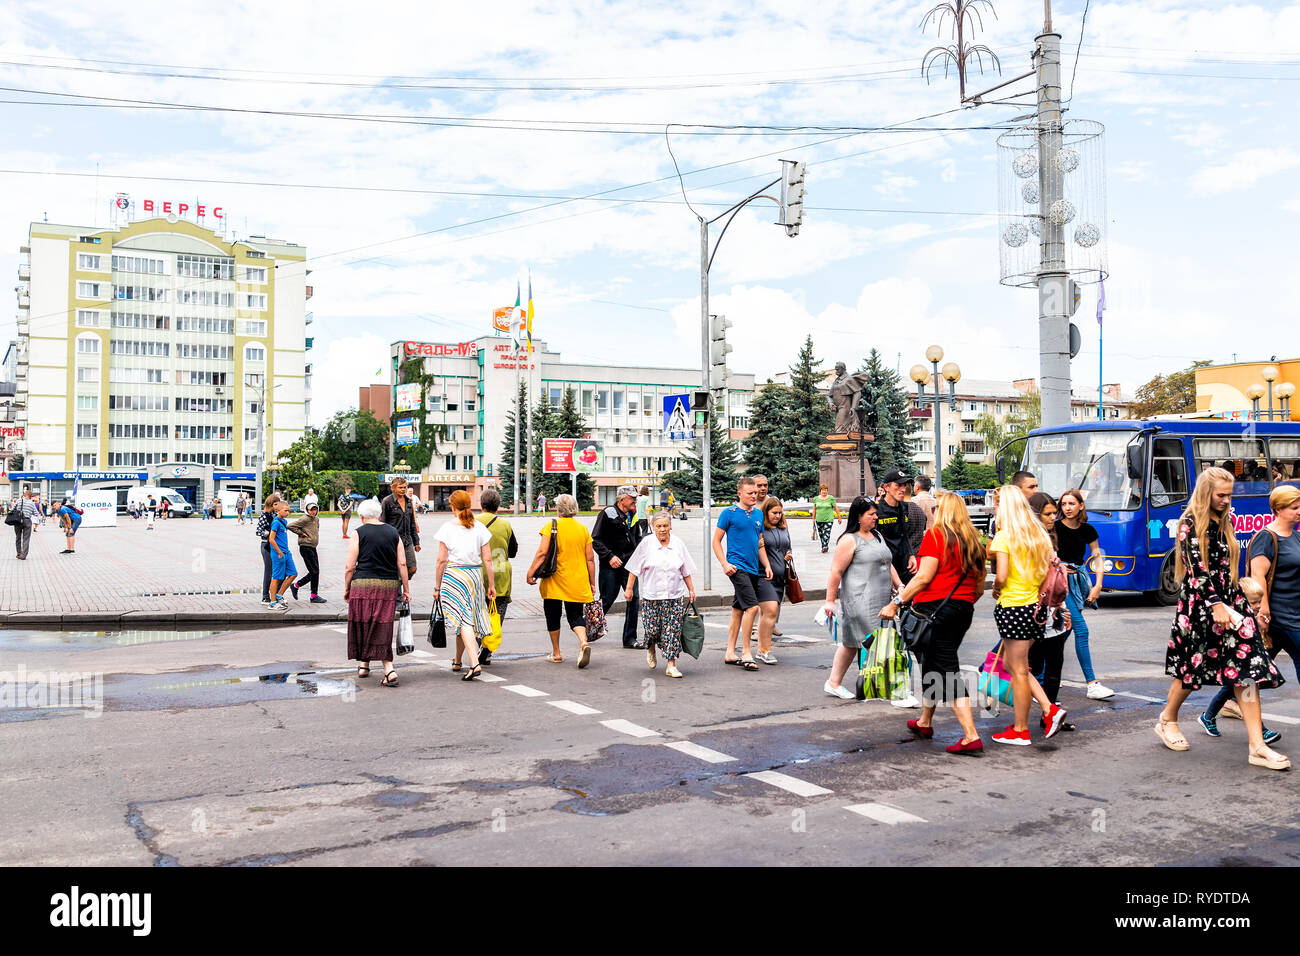 Riwne, Ukraine - August 16, 2018: Hauptplatz Straße mit Geschäften einkaufen für Rowno alte Architektur Stadt in der westlichen Ukraine und outdoor Park in Summe Stockfoto